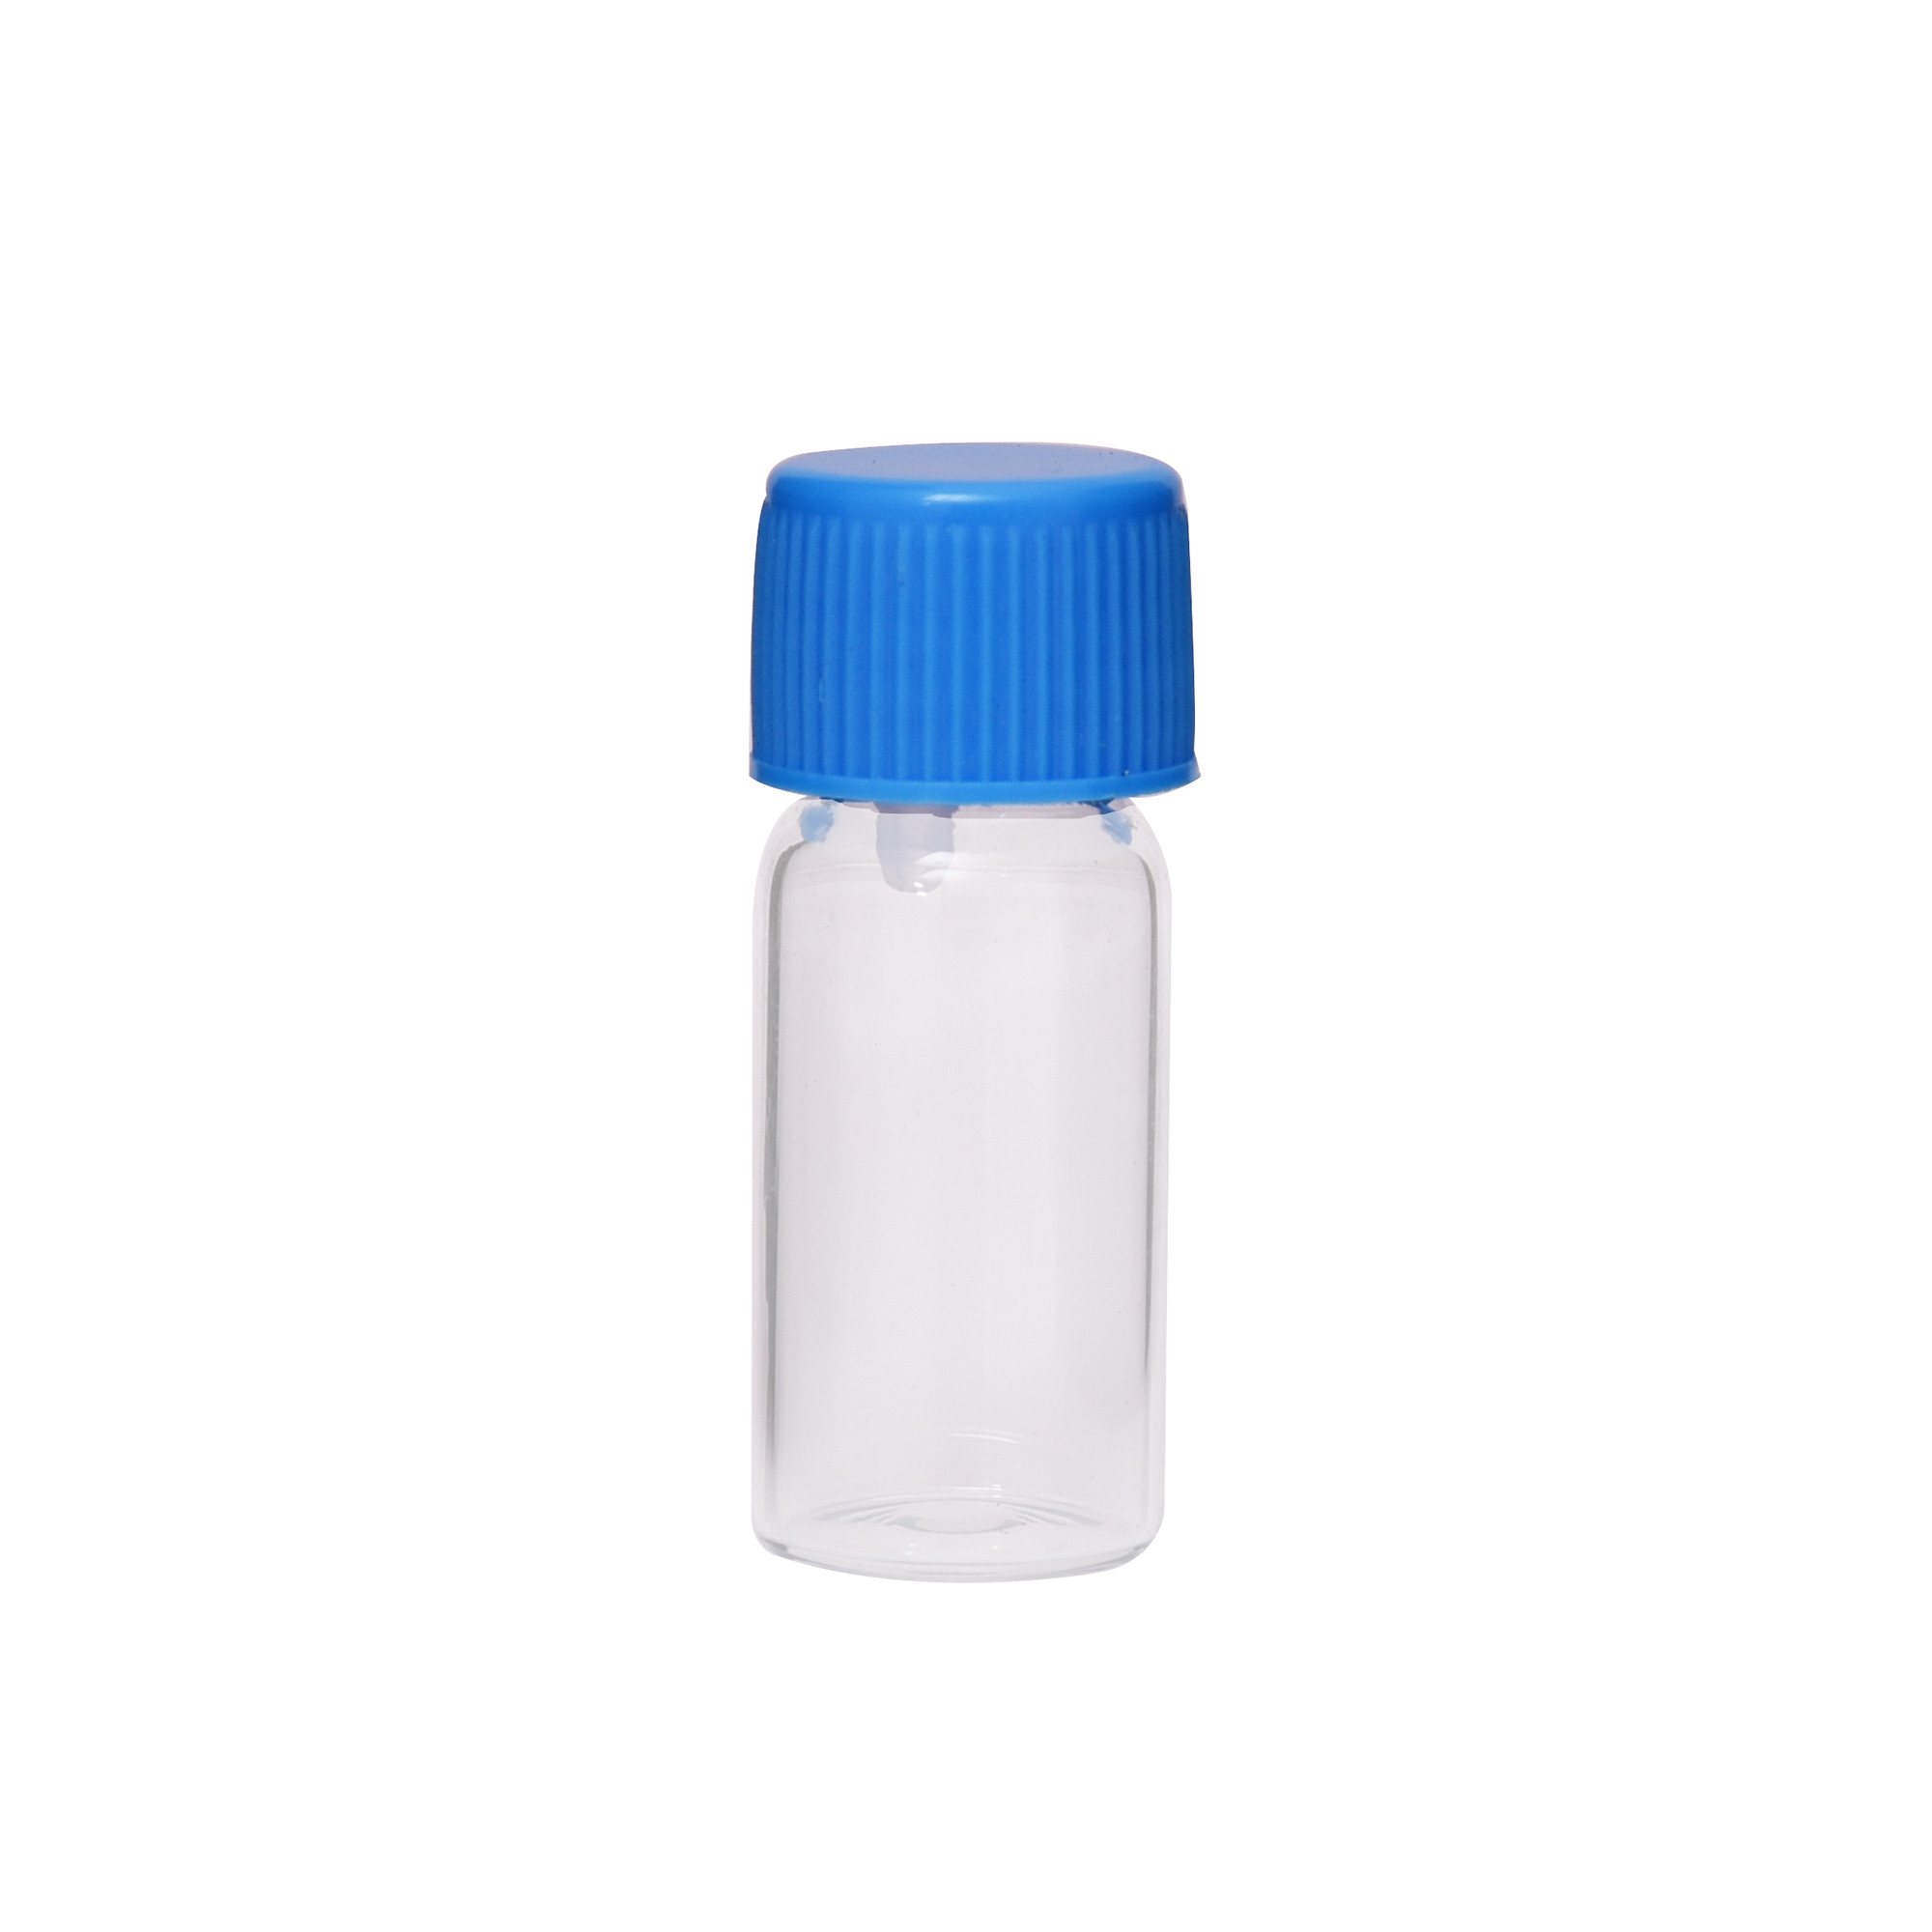 Empty Glass Vials - 2 ml - 1/2 Dram - Blue Color Cap